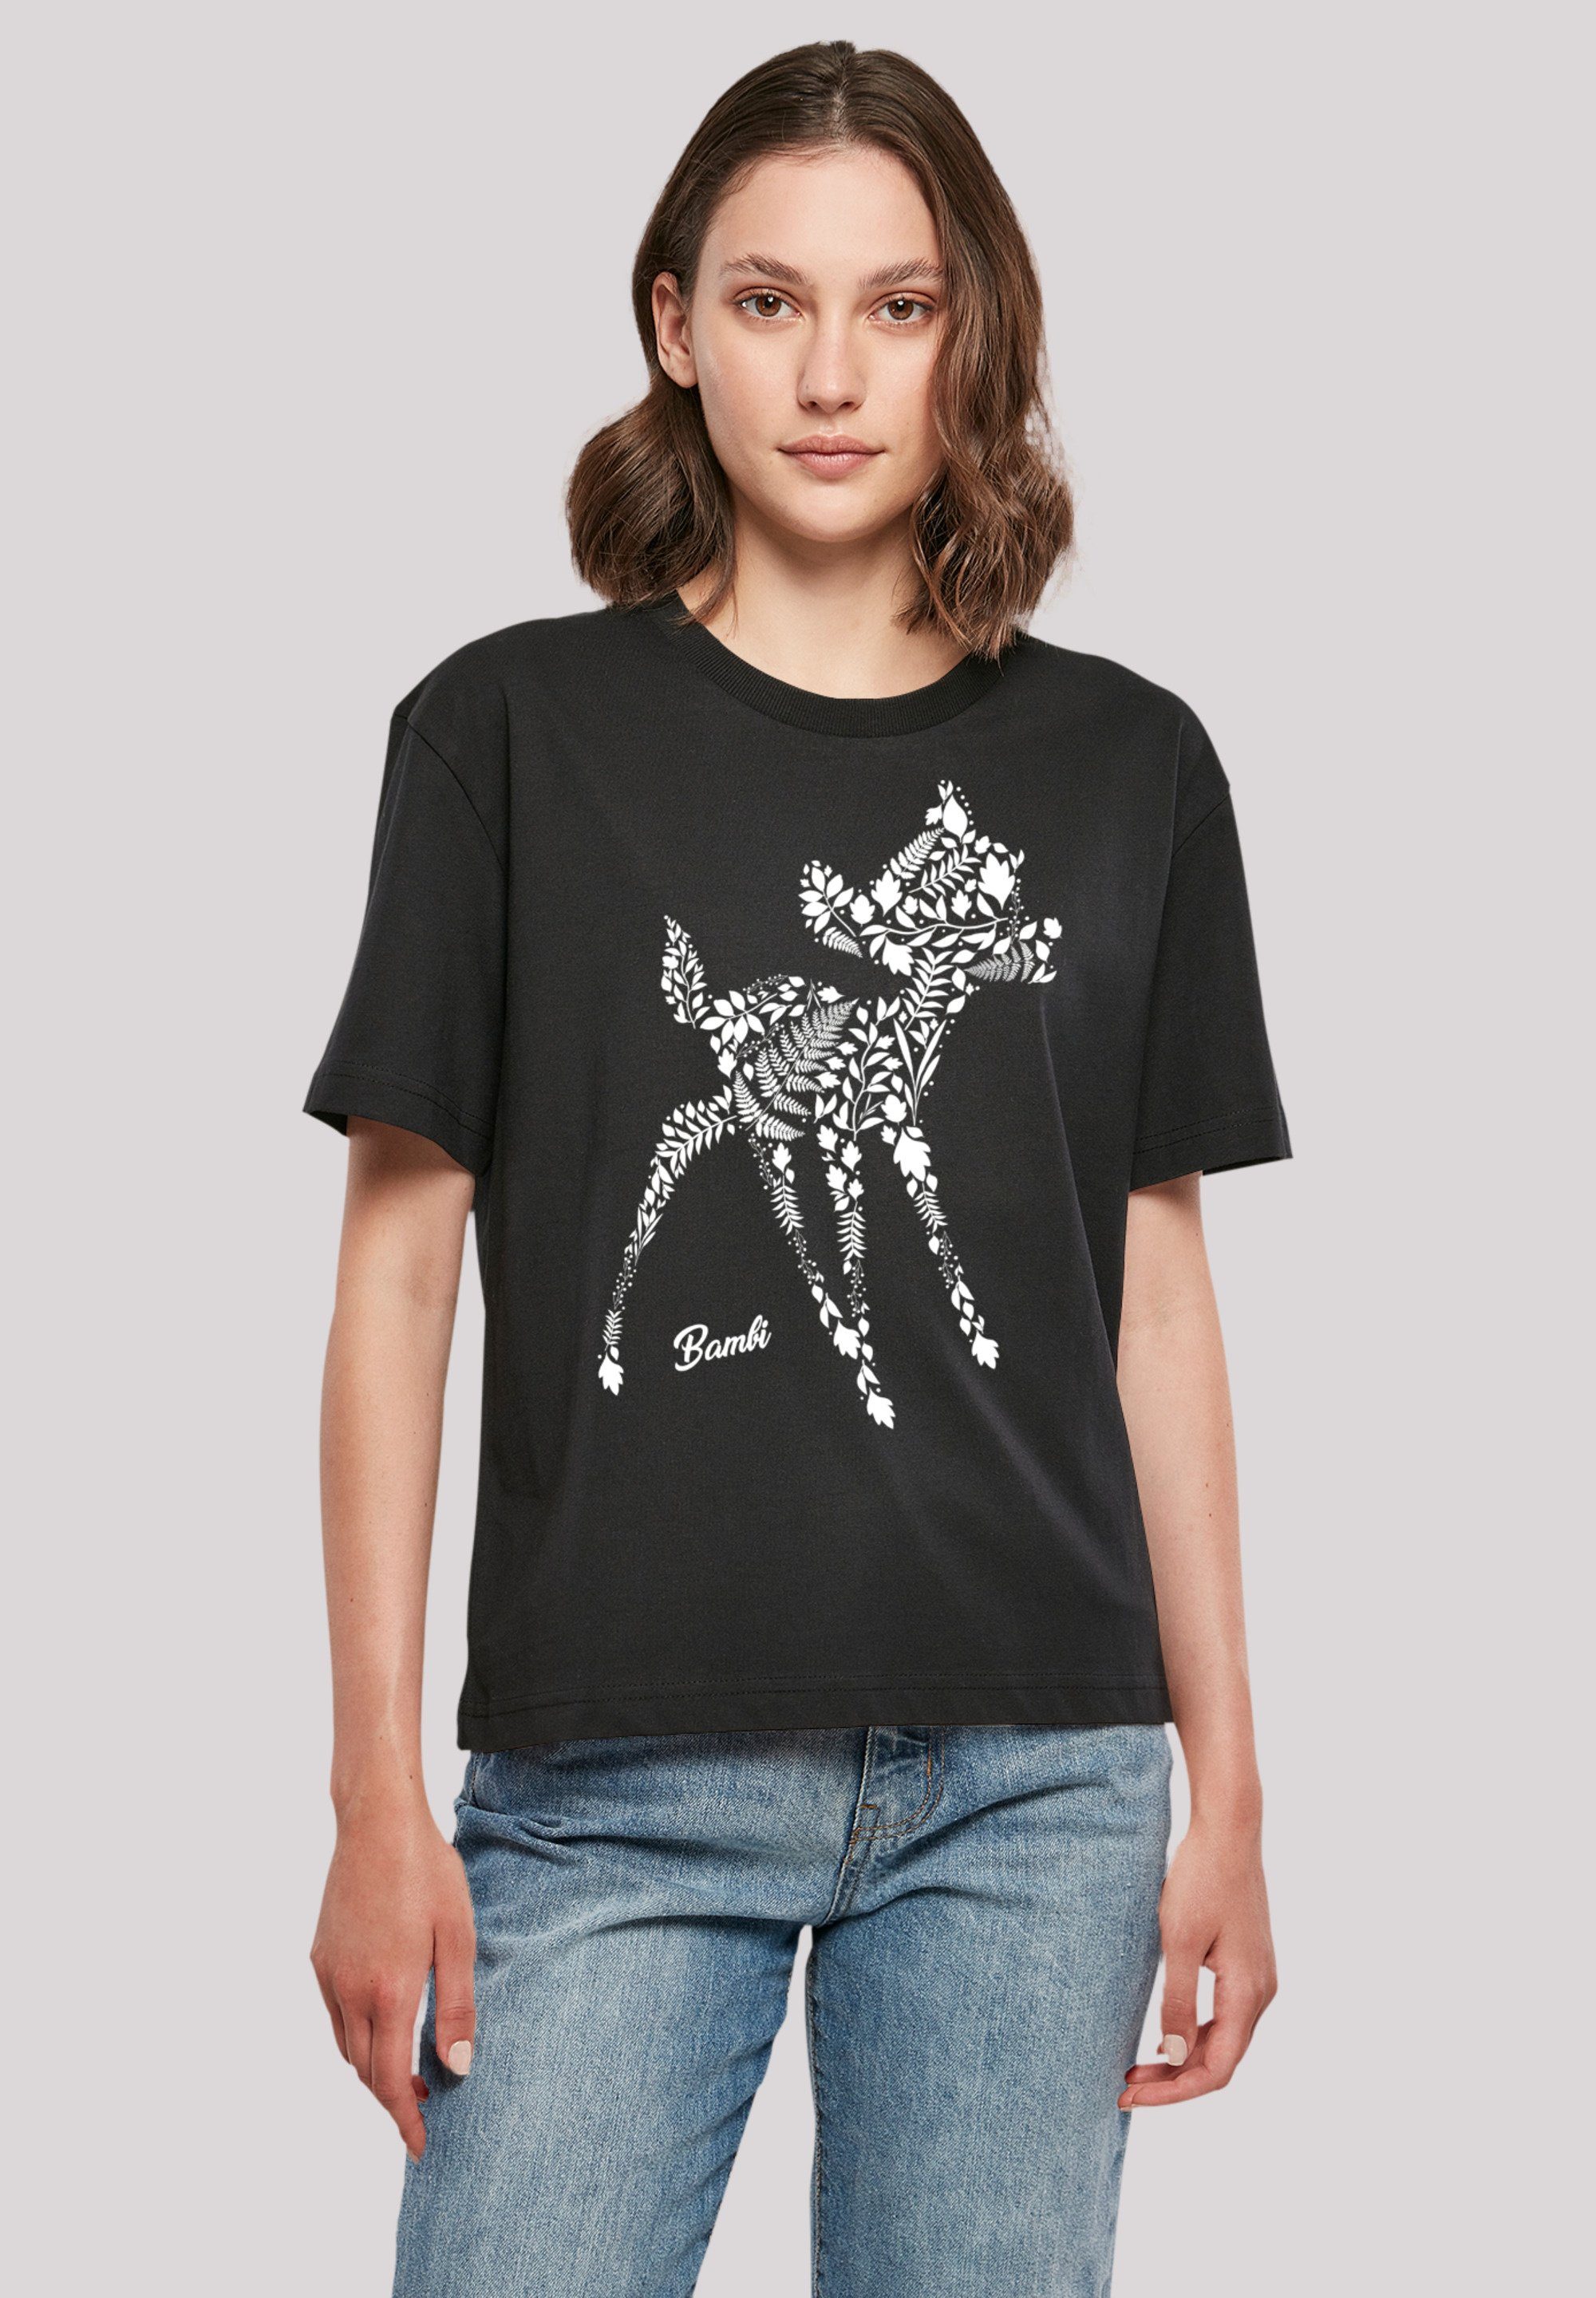 vielseitig Komfortabel kombinierbar Qualität, Botanica Premium T-Shirt F4NT4STIC Bambi und Disney